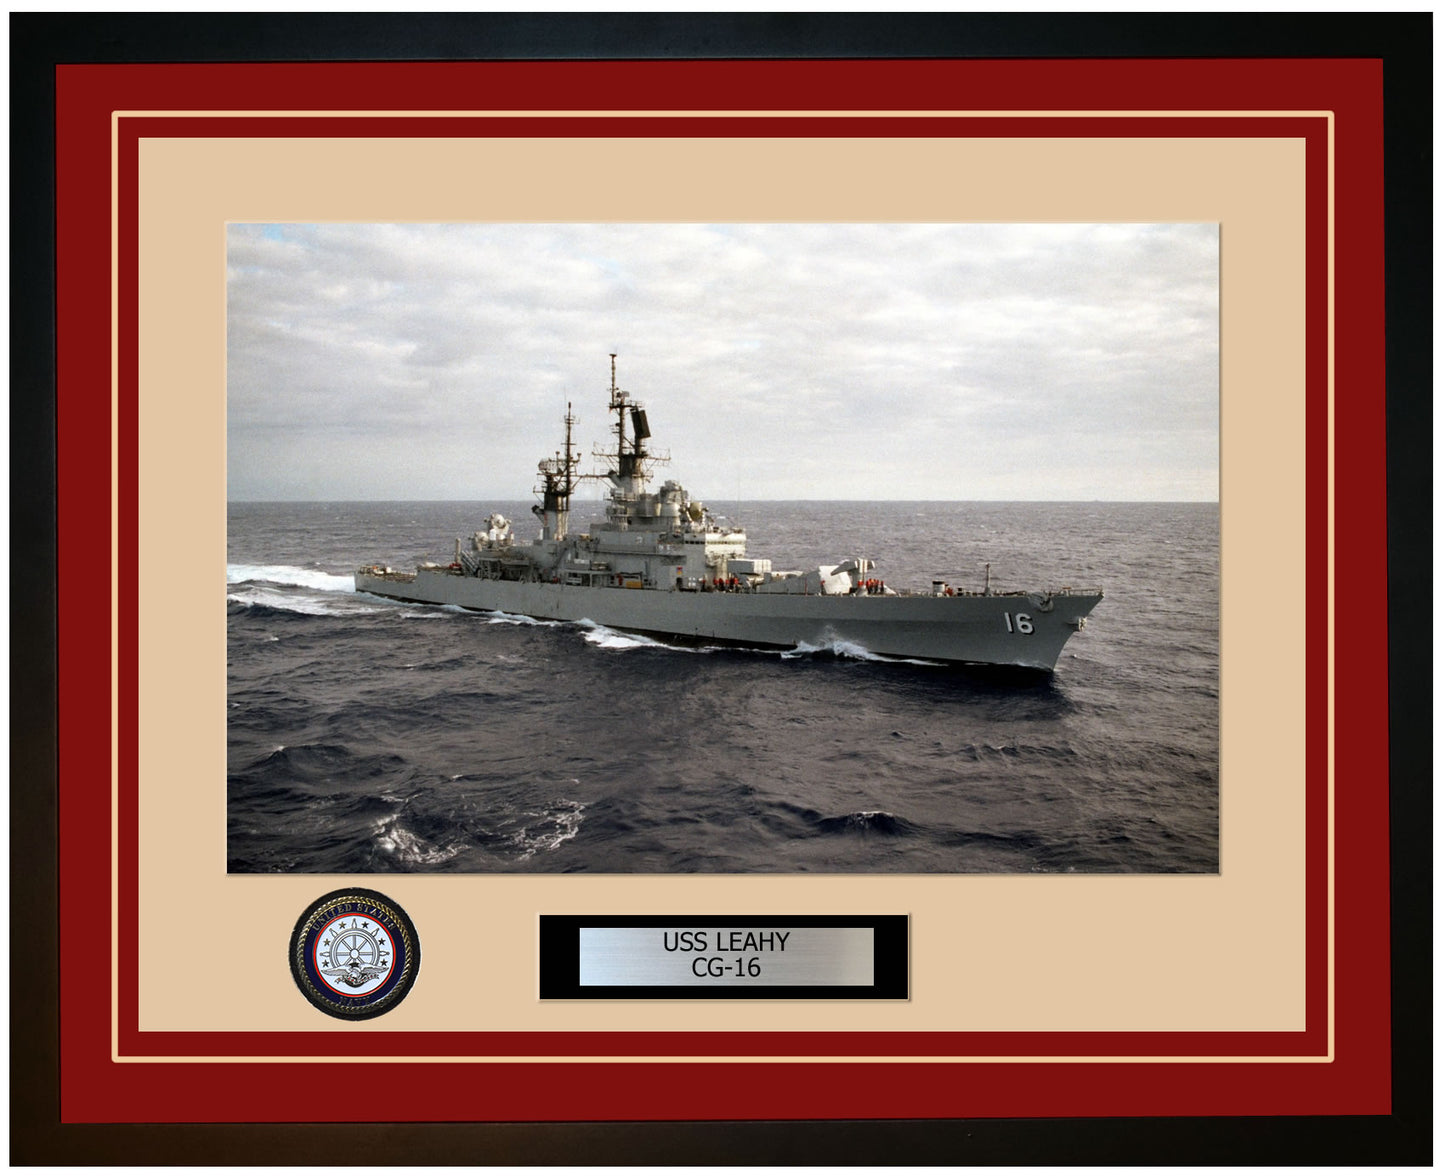 USS LEAHY CG-16 Framed Navy Ship Photo Burgundy